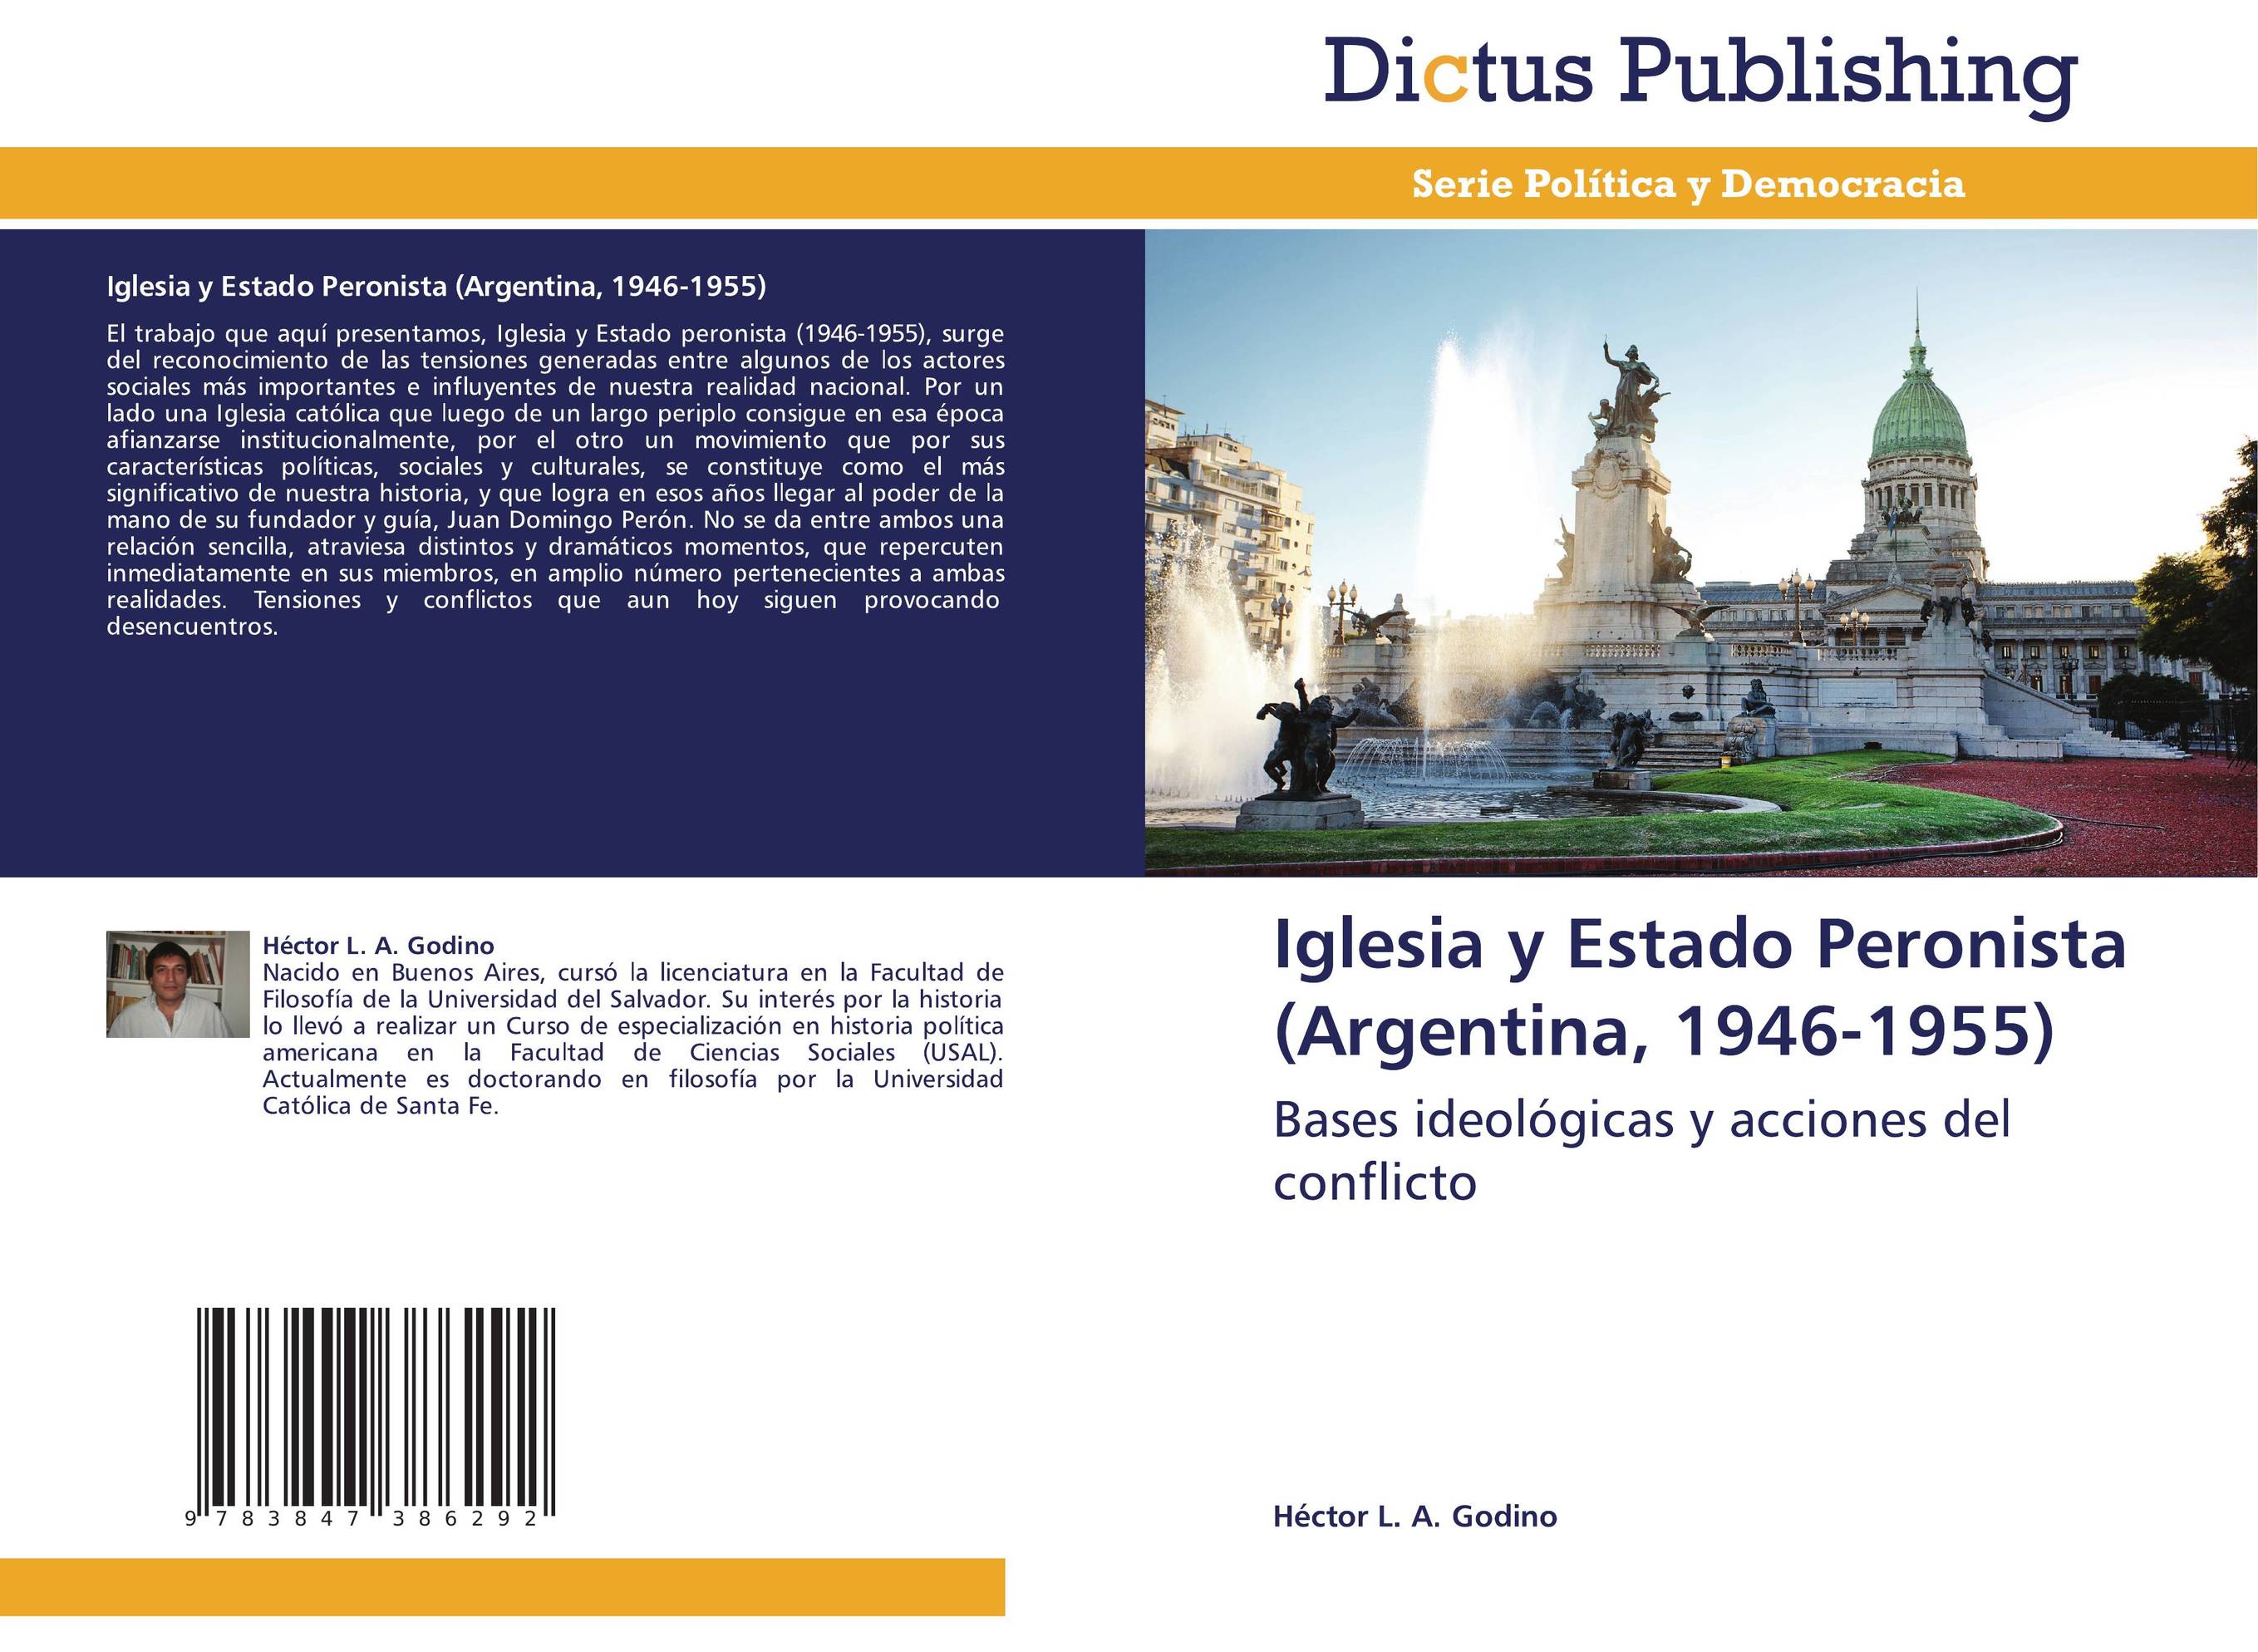 Iglesia y Estado Peronista (Argentina, 1946-1955)